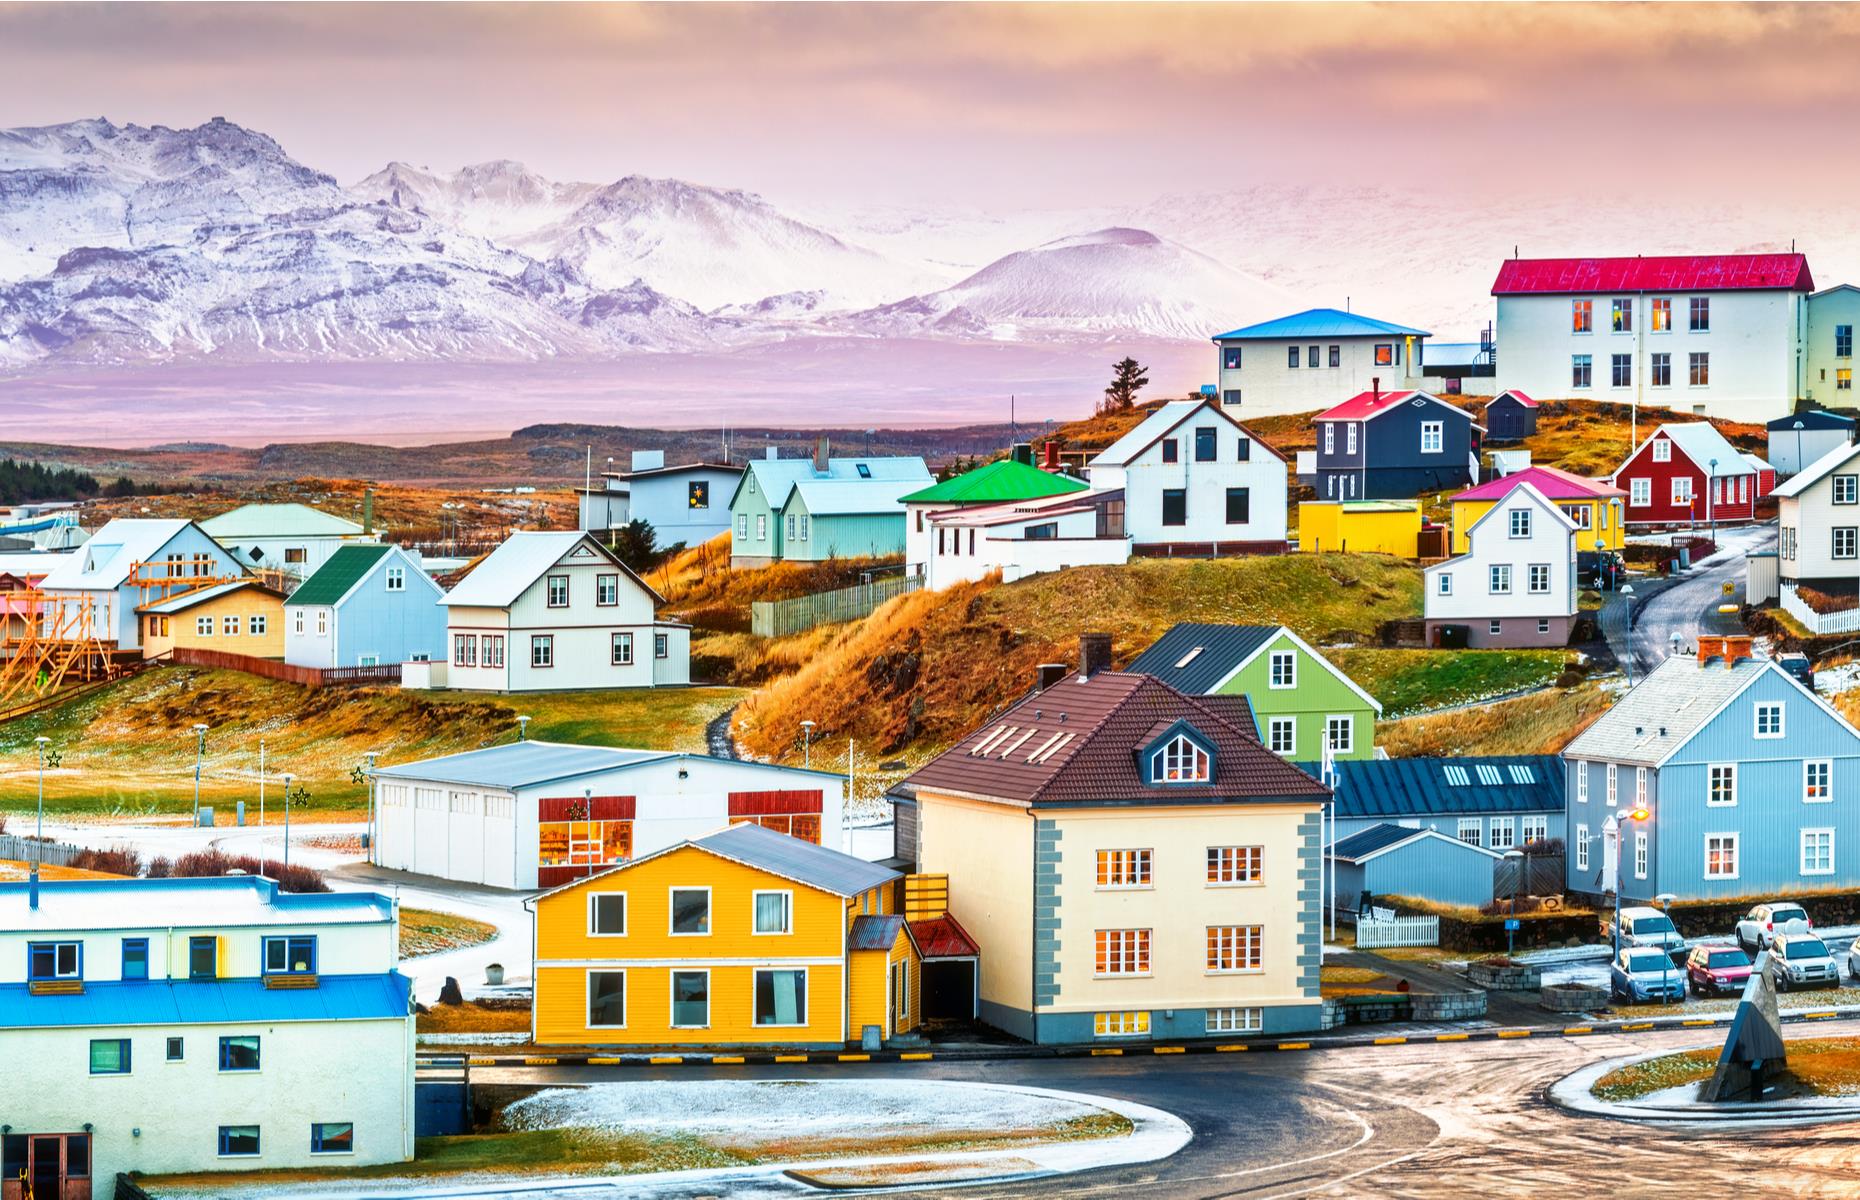 4. Iceland – Median wealth: $165,961